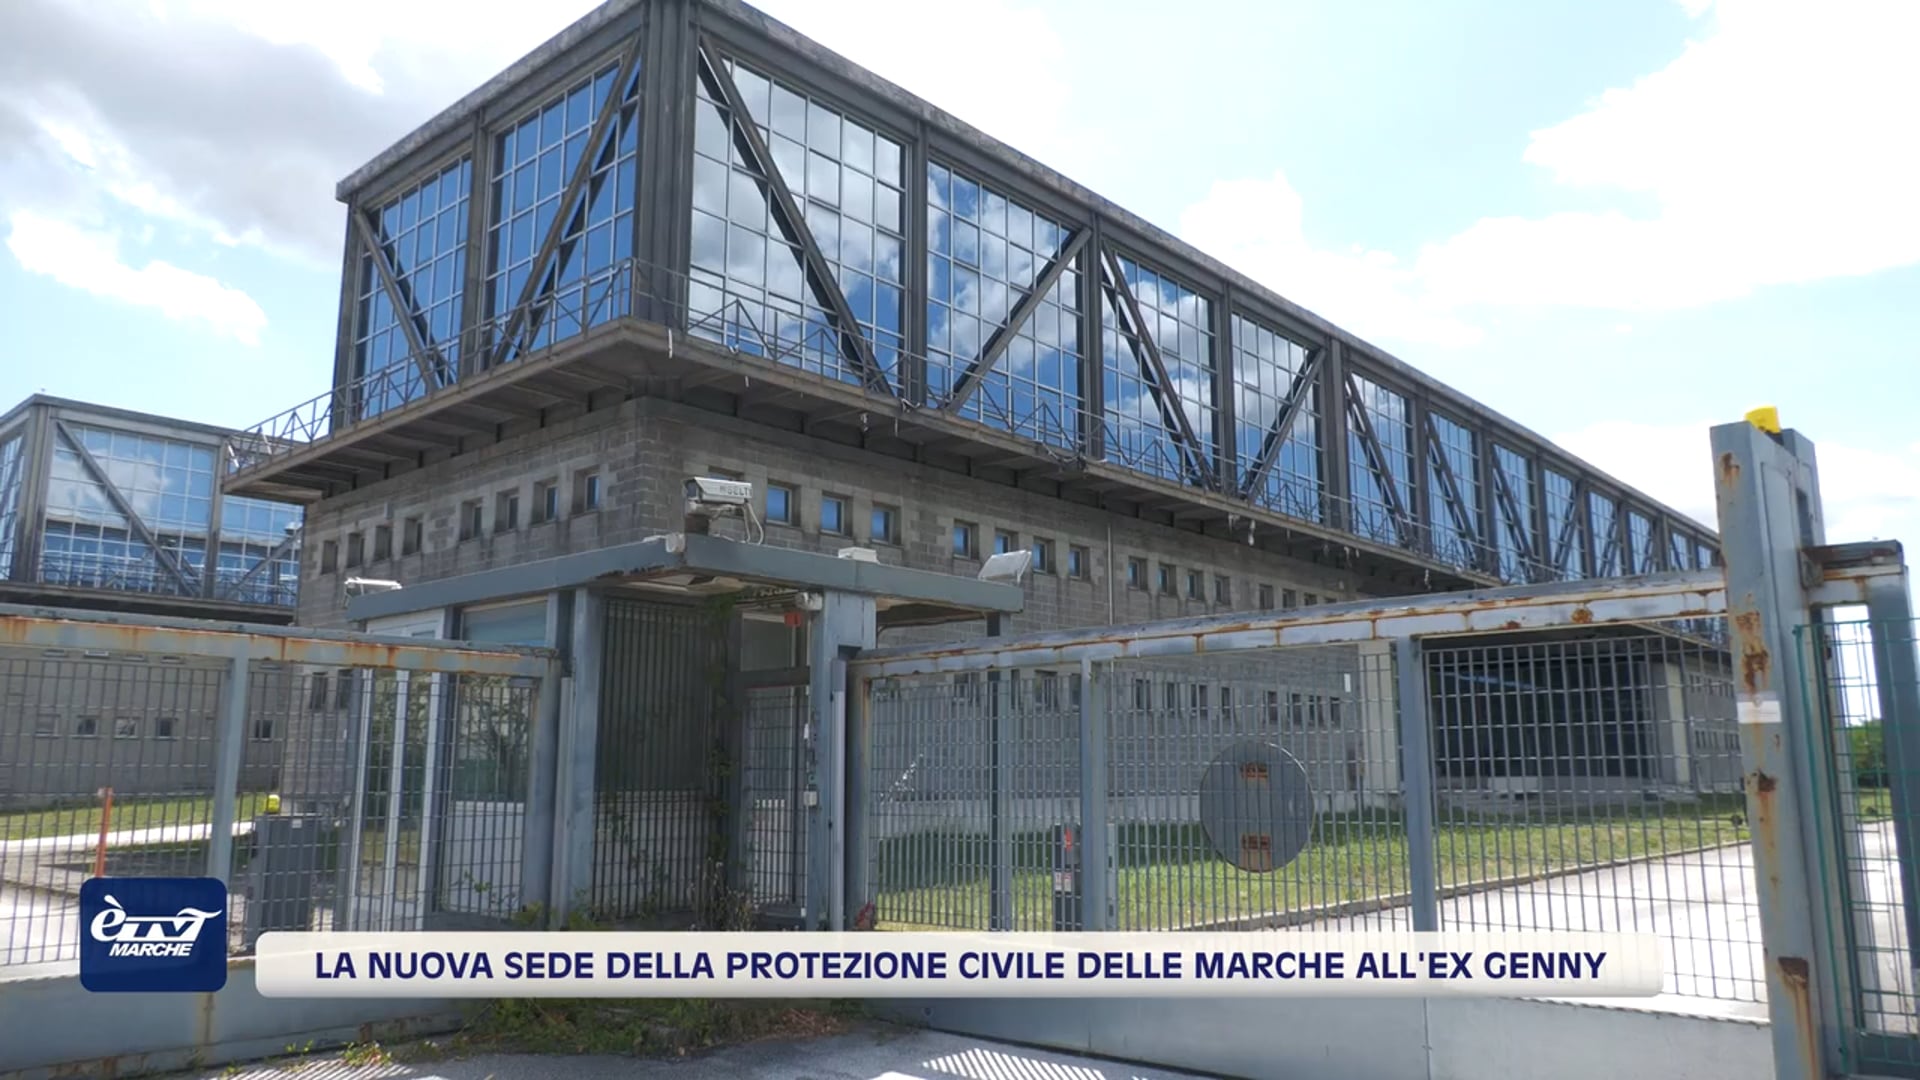 La nuova sede della Protezione civile delle Marche all'ex Genny - VIDEO